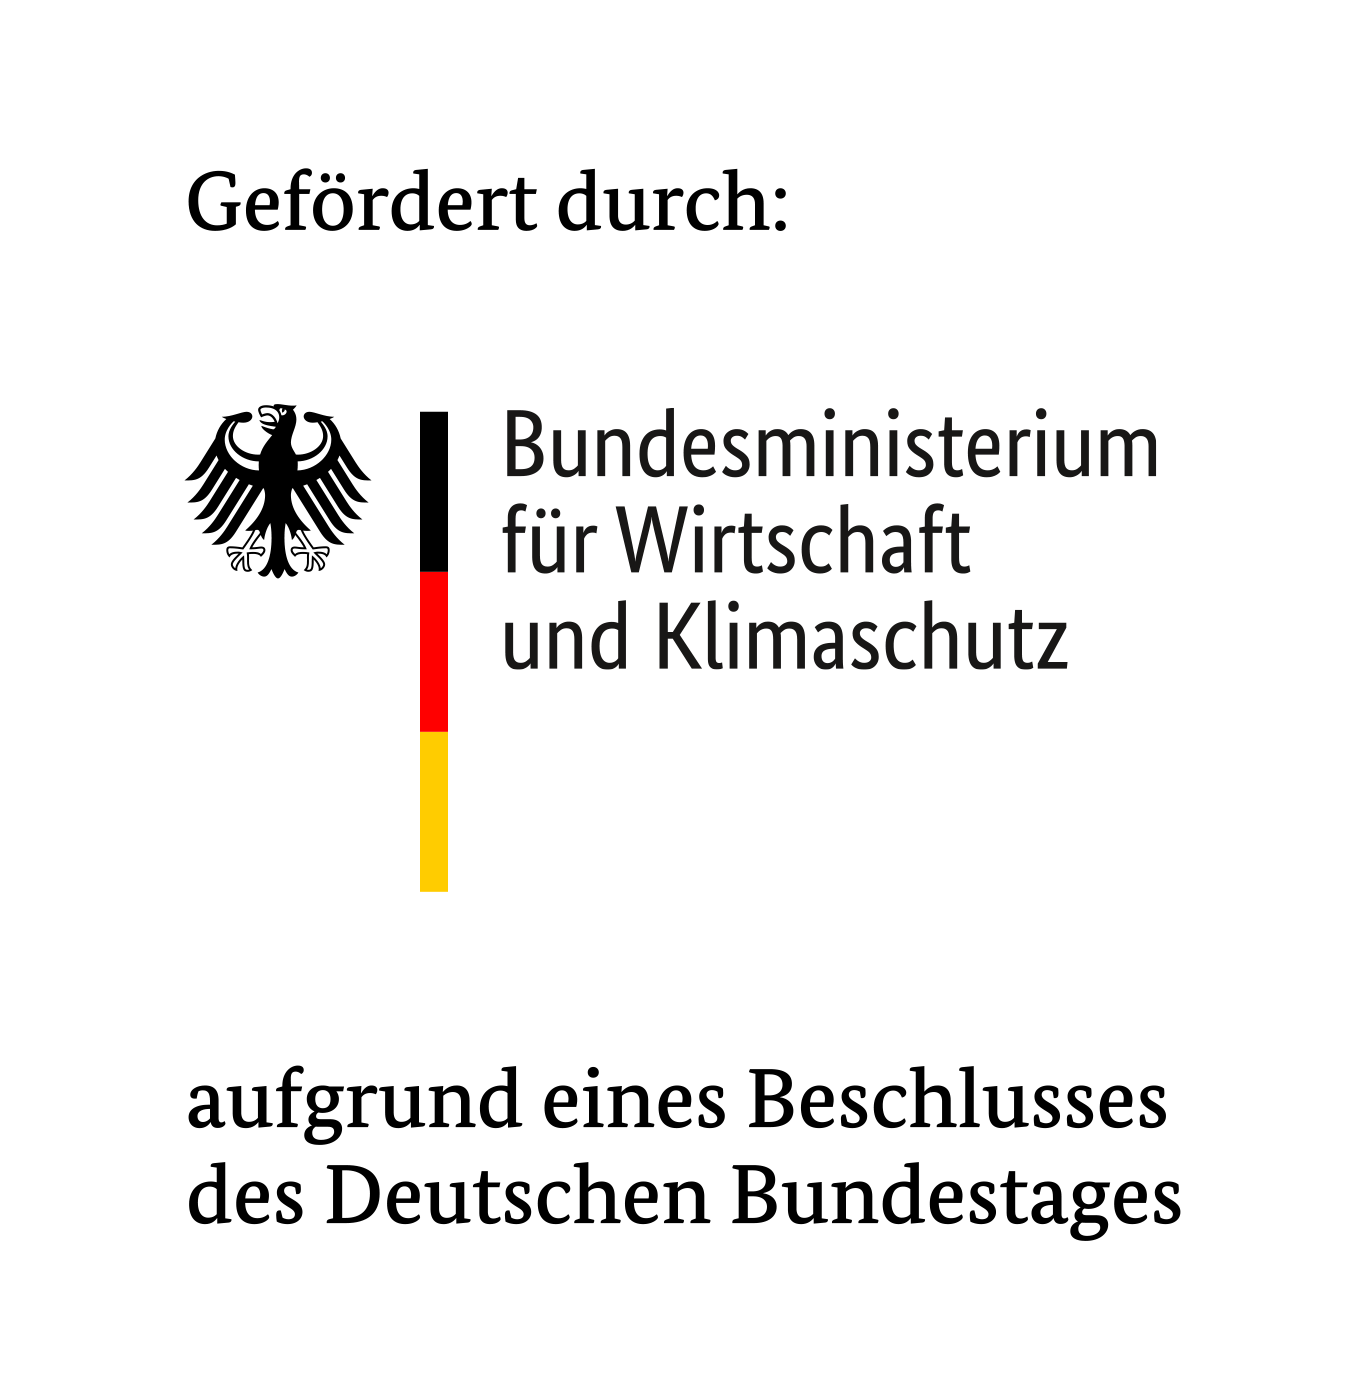 Gefördert durch Bundesministerium für Wirtschaft und Klimaschutz aufgrund eines Beschlusses des Deutschen Bundestags